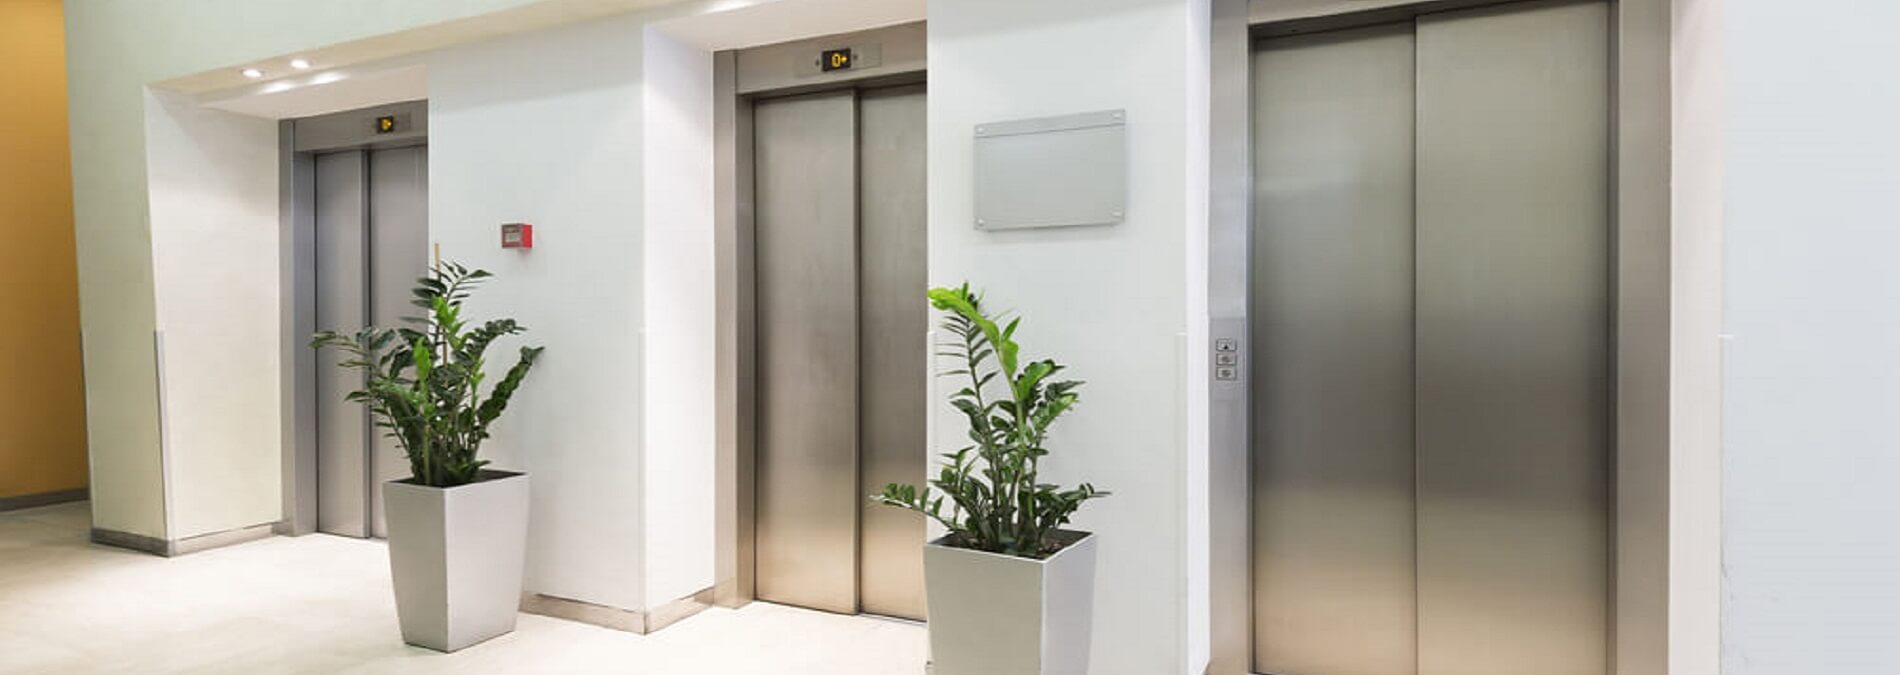 Comfort Elevators Pvt. Ltd.